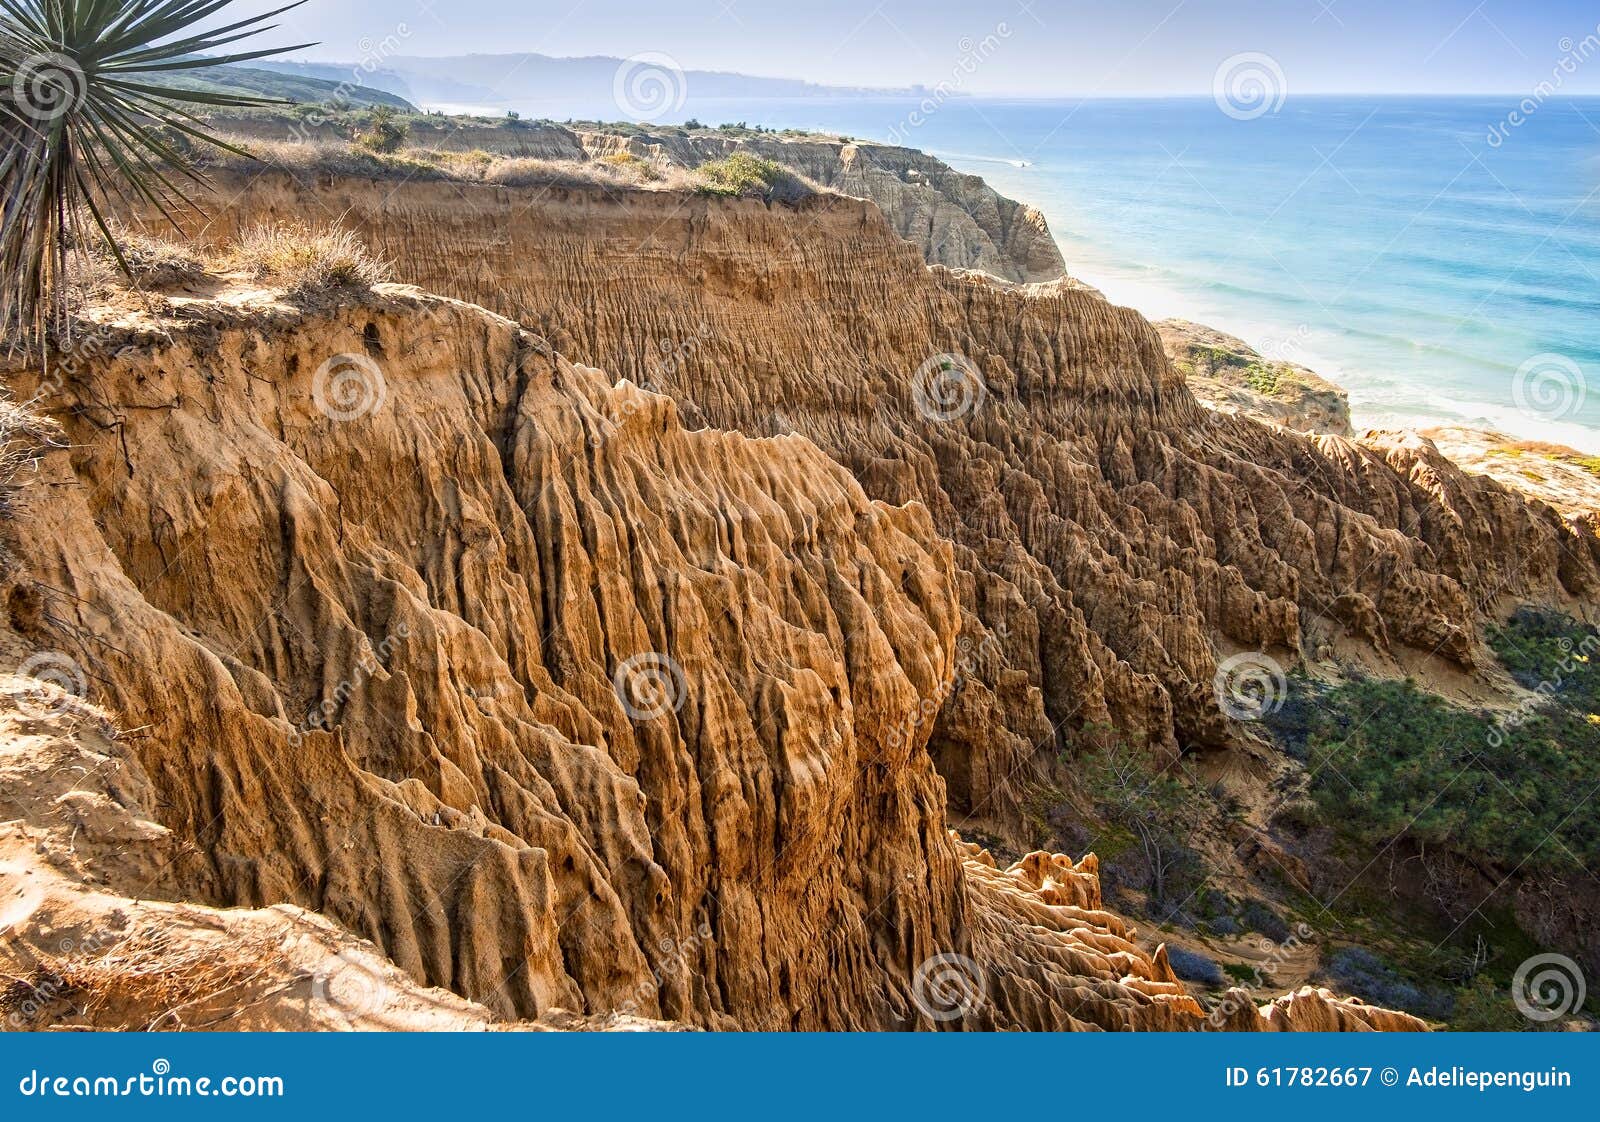 eroded cliffs, ocean, san diego, california